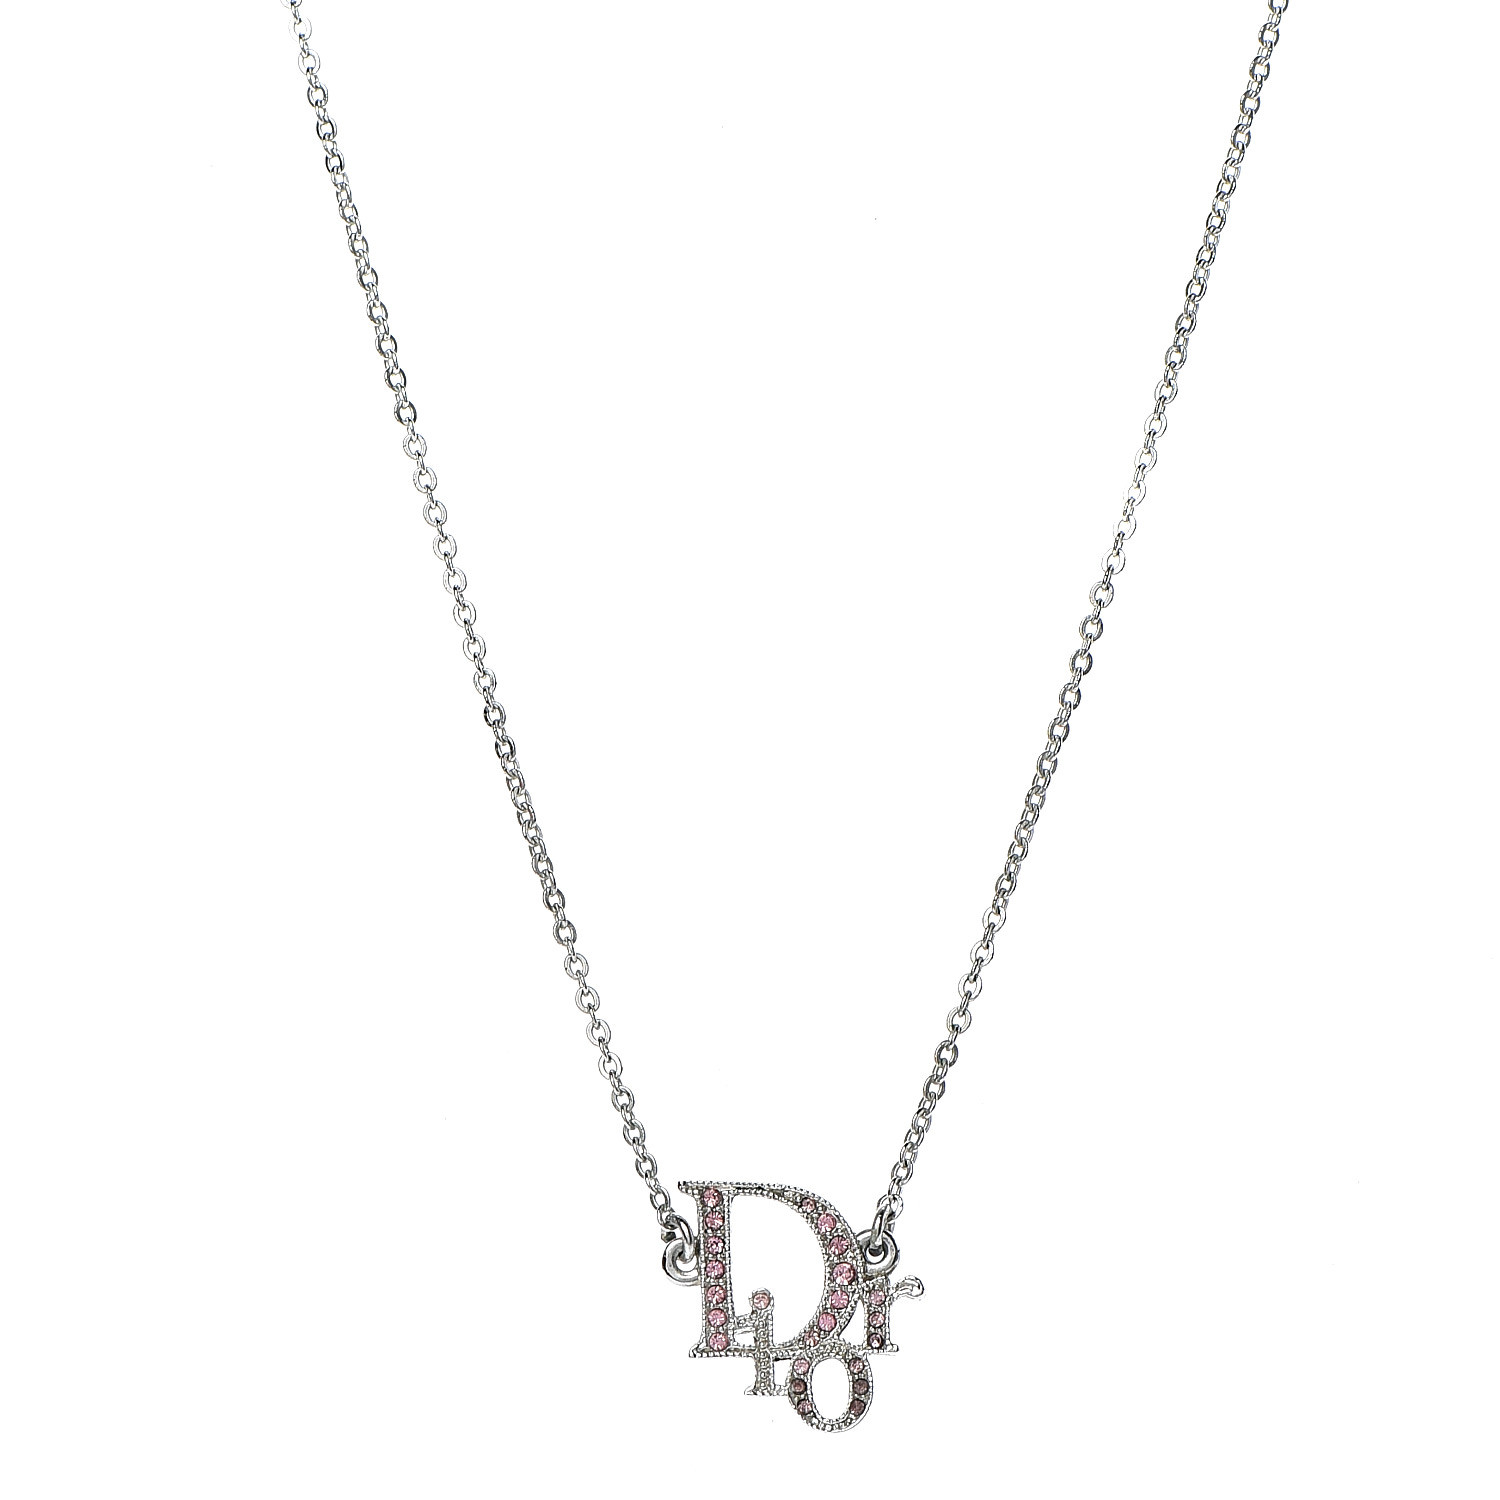 dior logo necklace